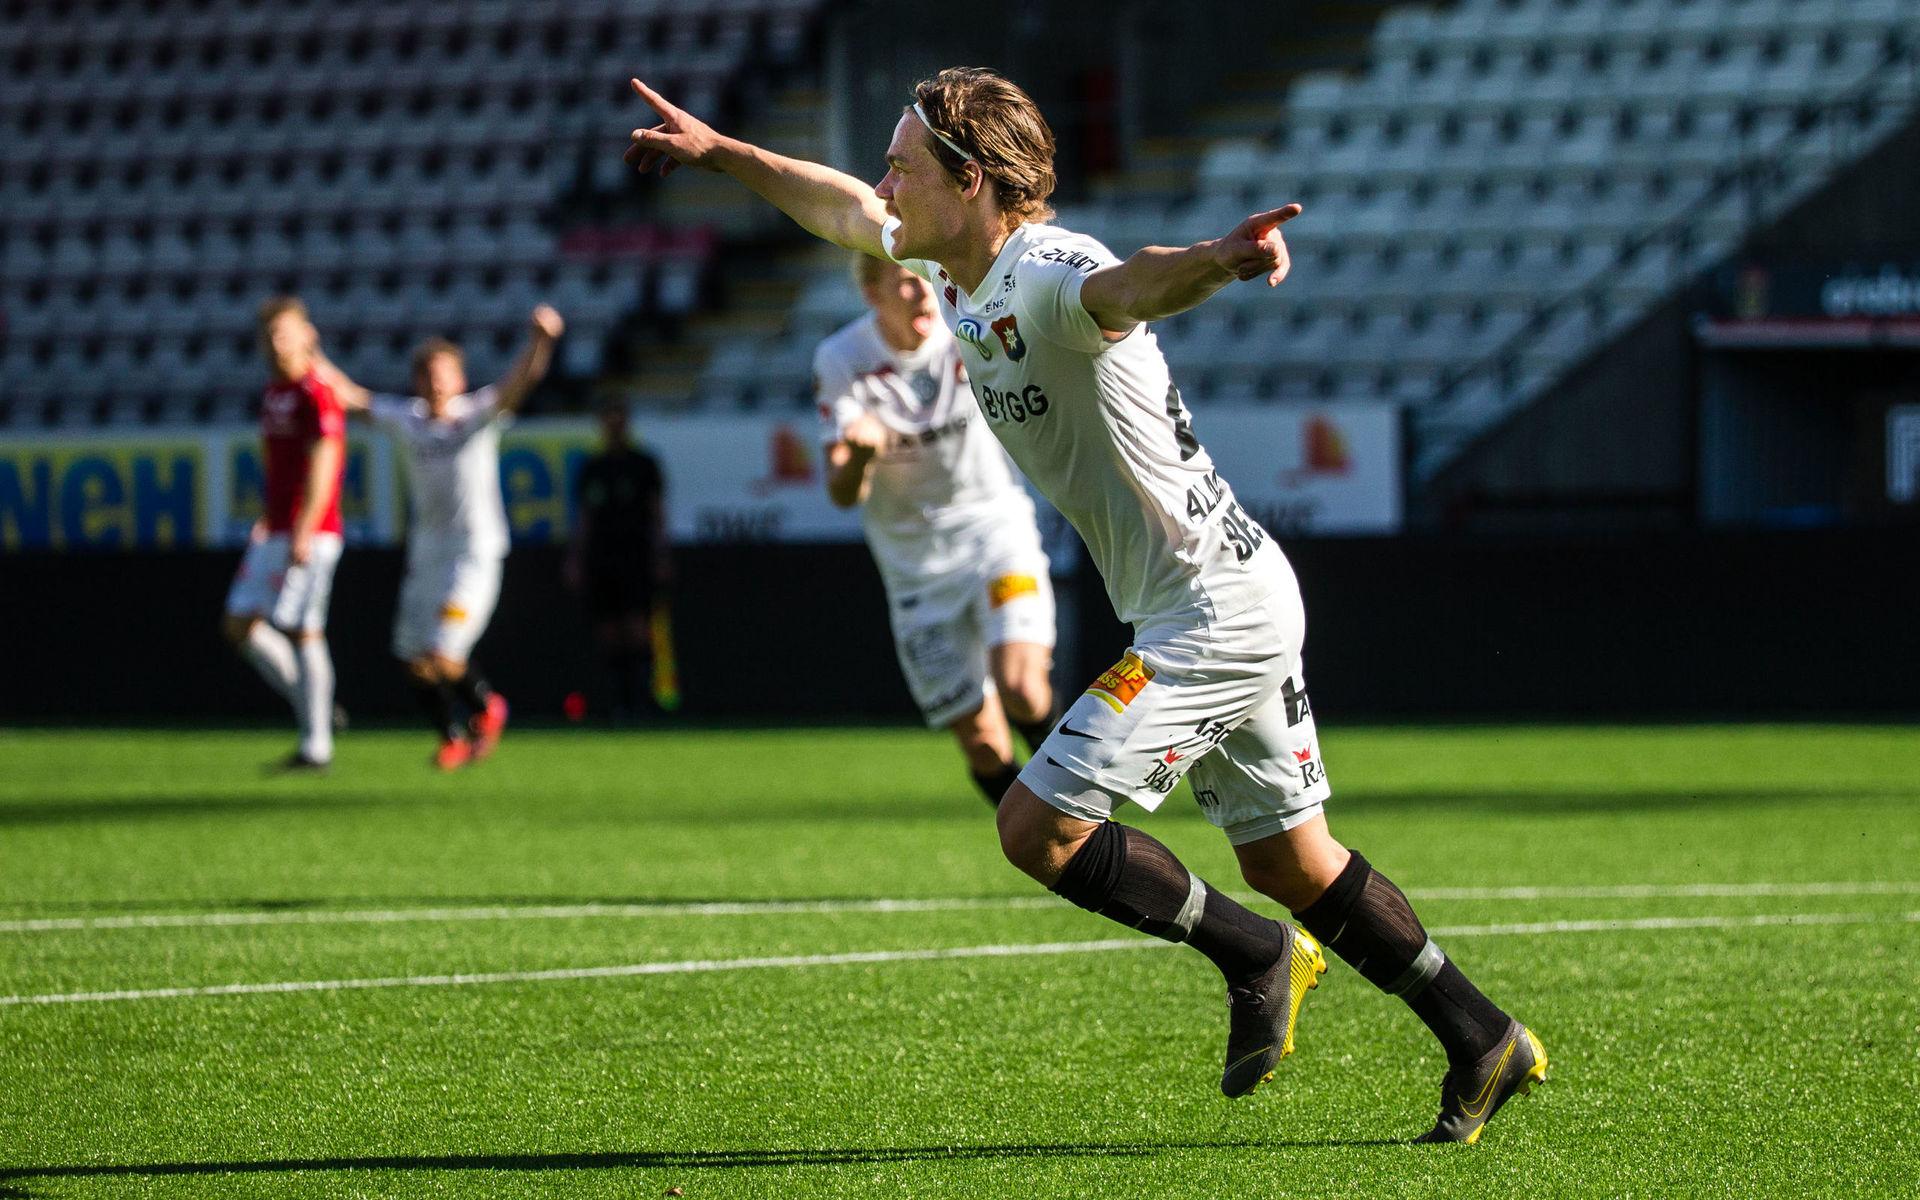 Filip Almström Tähti jublar efter det avgörande 1-2-målet. 